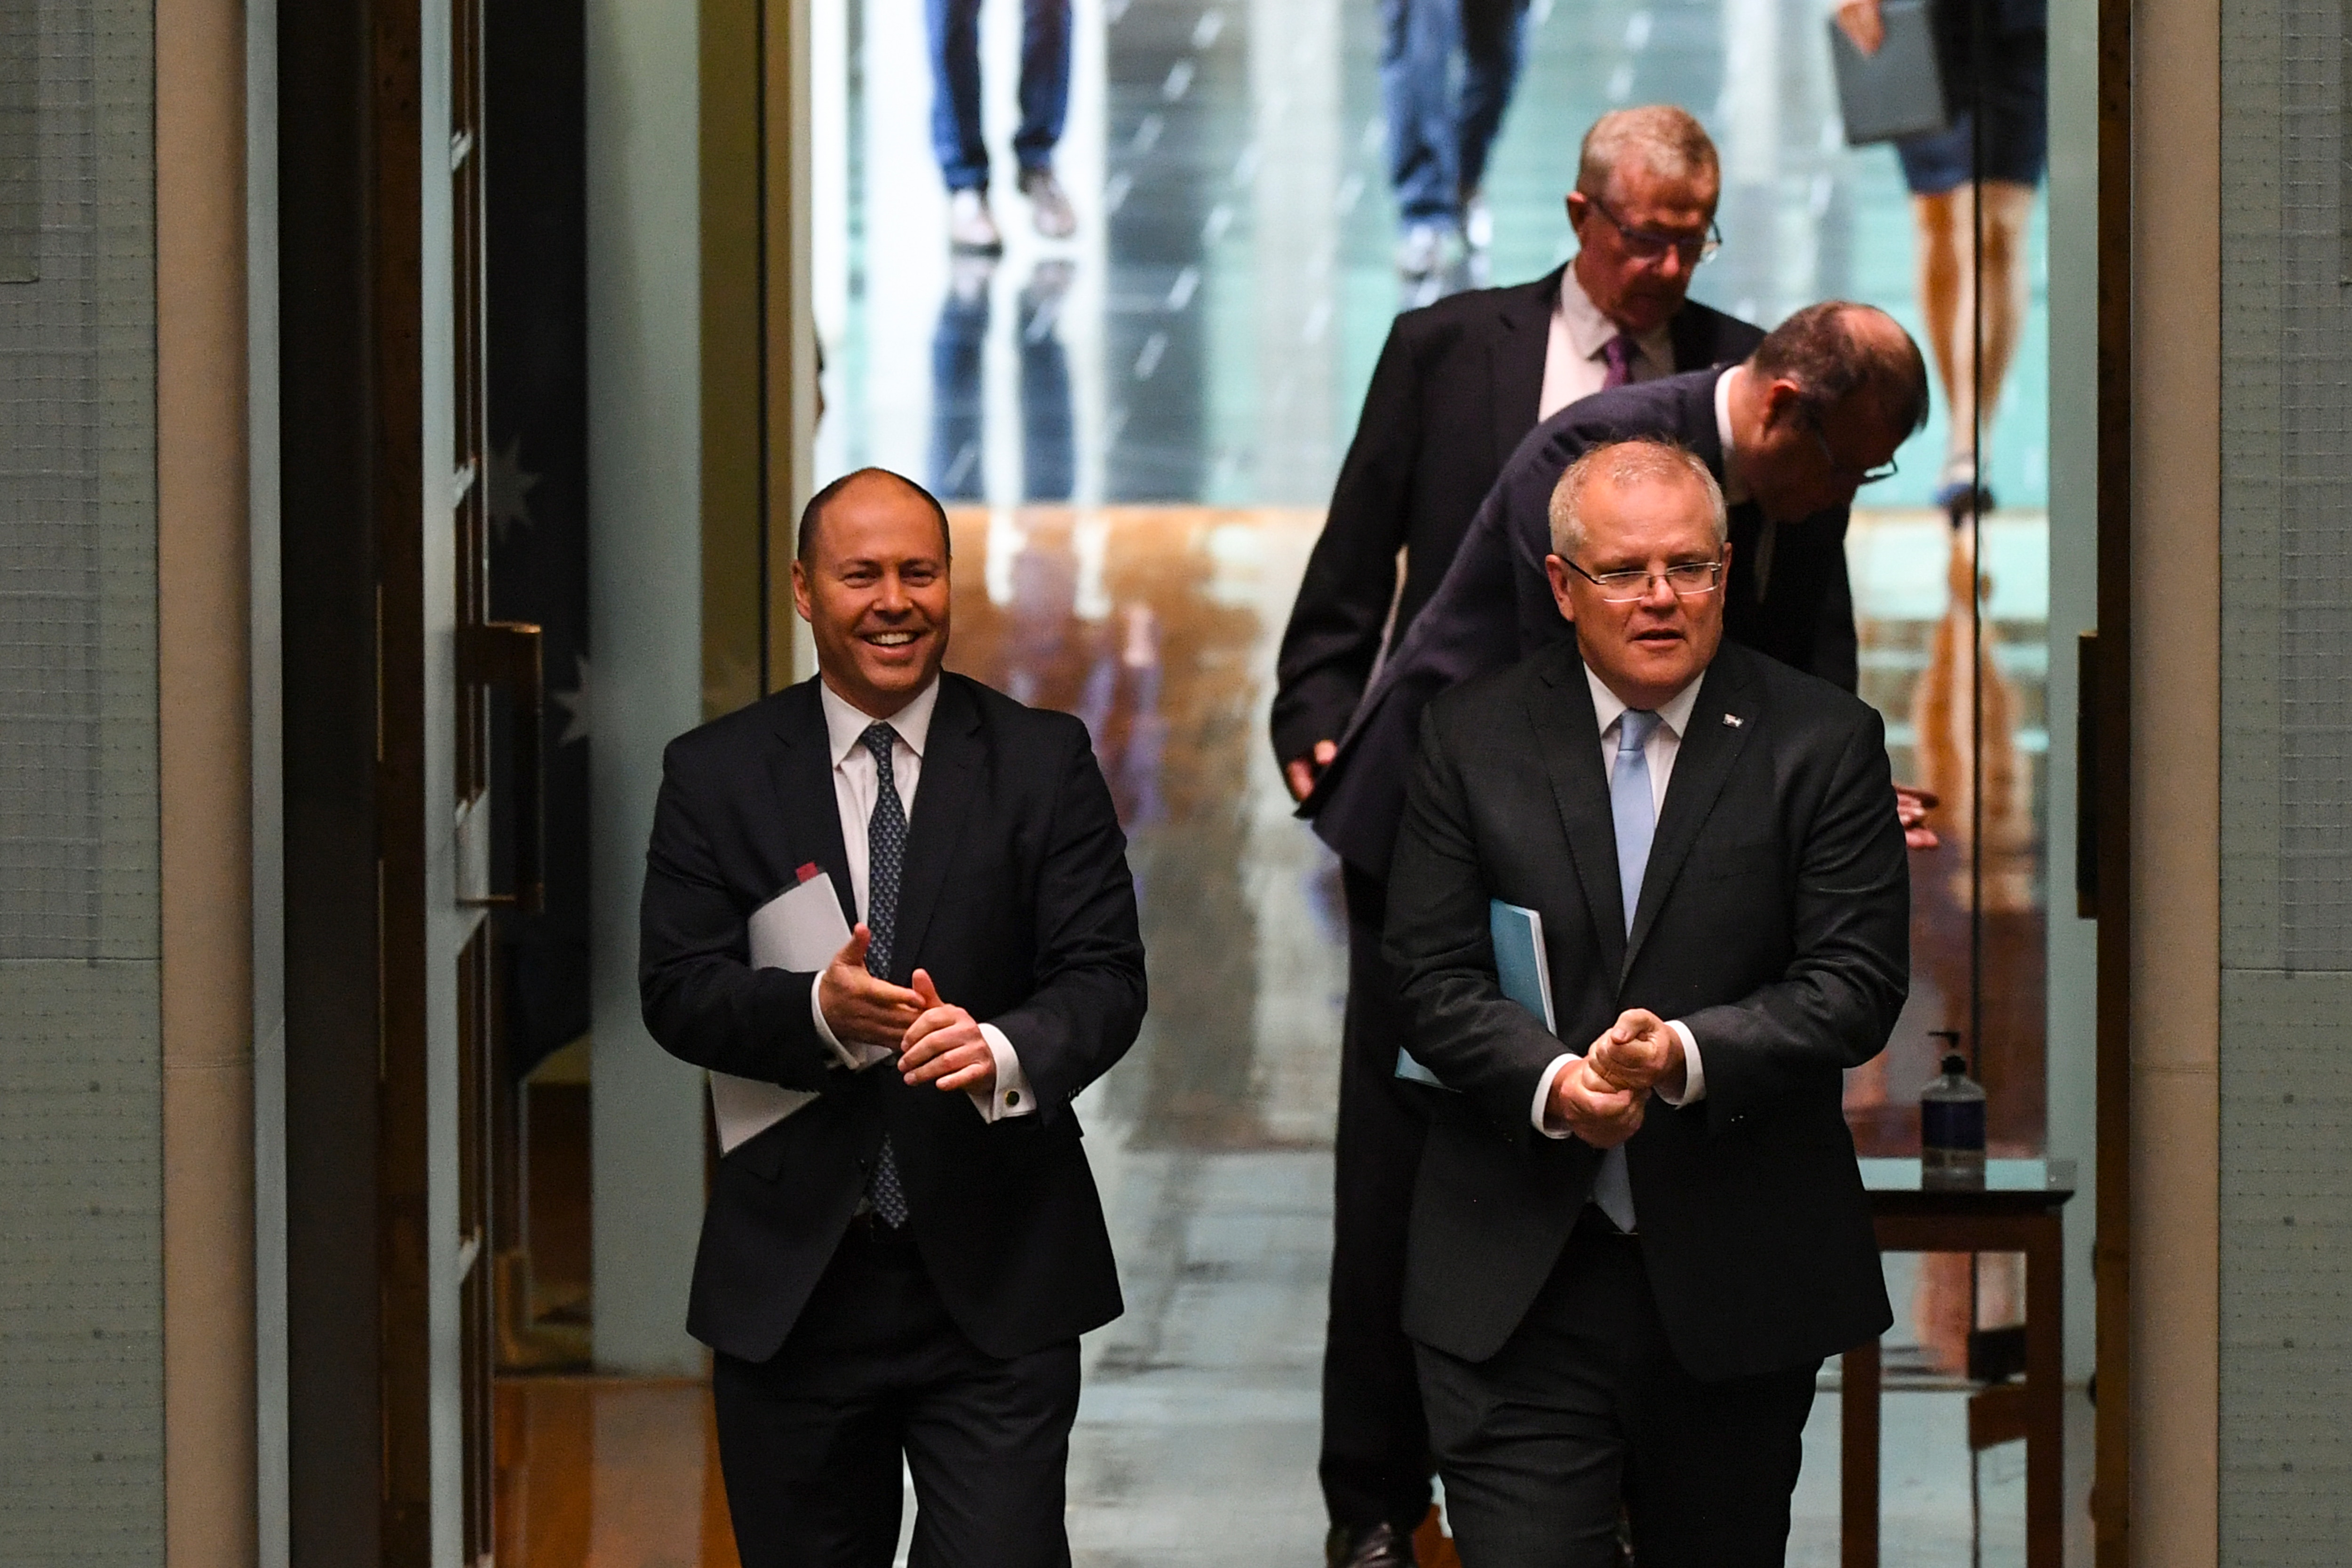  Prime Minister Scott Morrison and Australian Treasurer Josh Frydenberg.